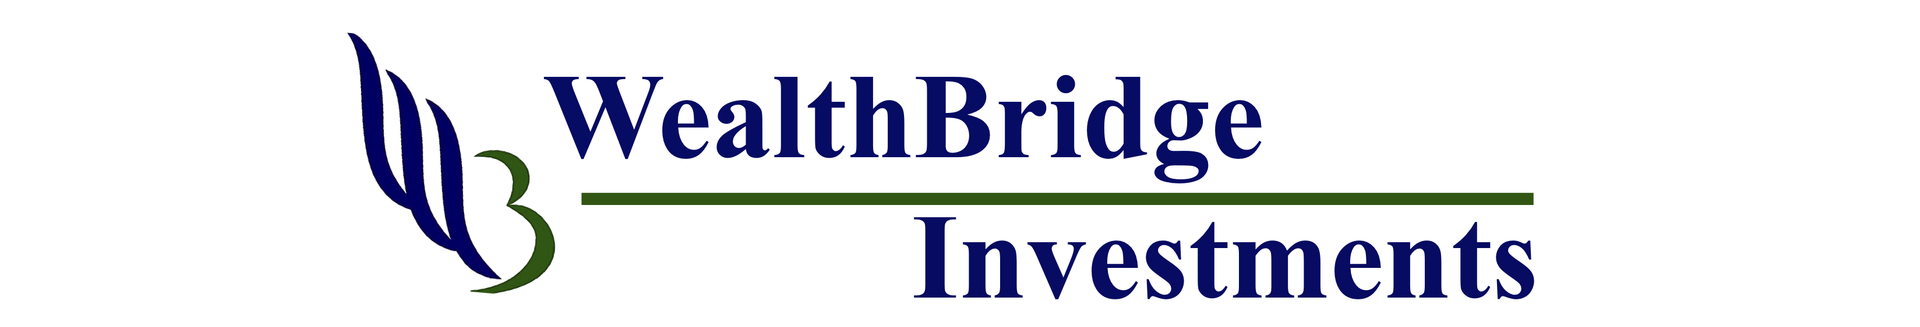 WealthBridge Investments